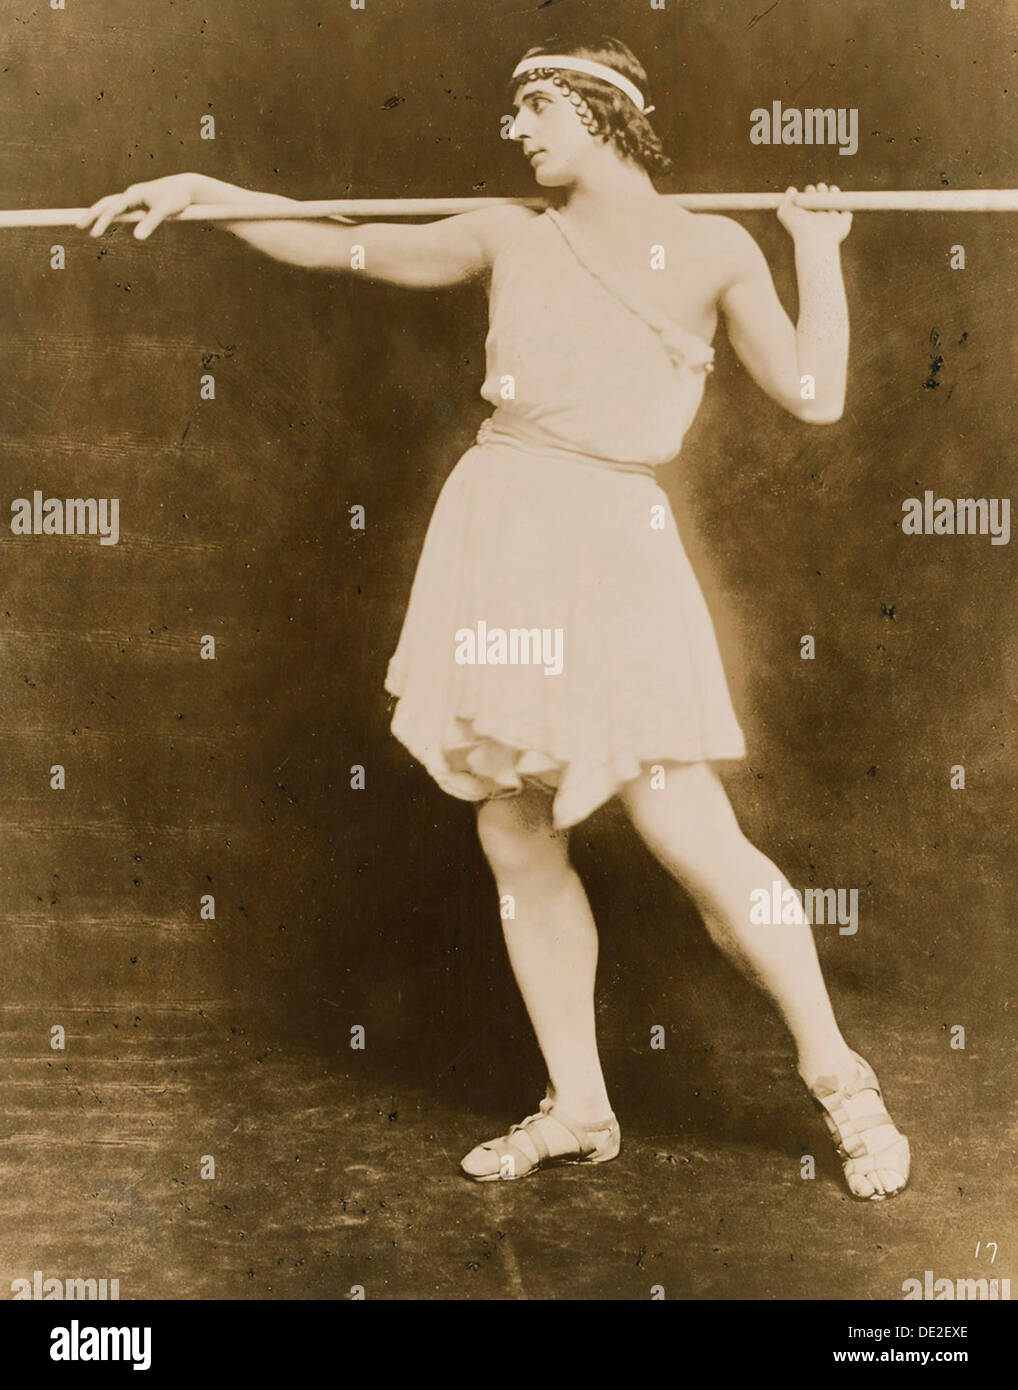 Michel Fokine, danseur et chorégraphe de ballet russe, 1911. Artiste : Inconnu Banque D'Images